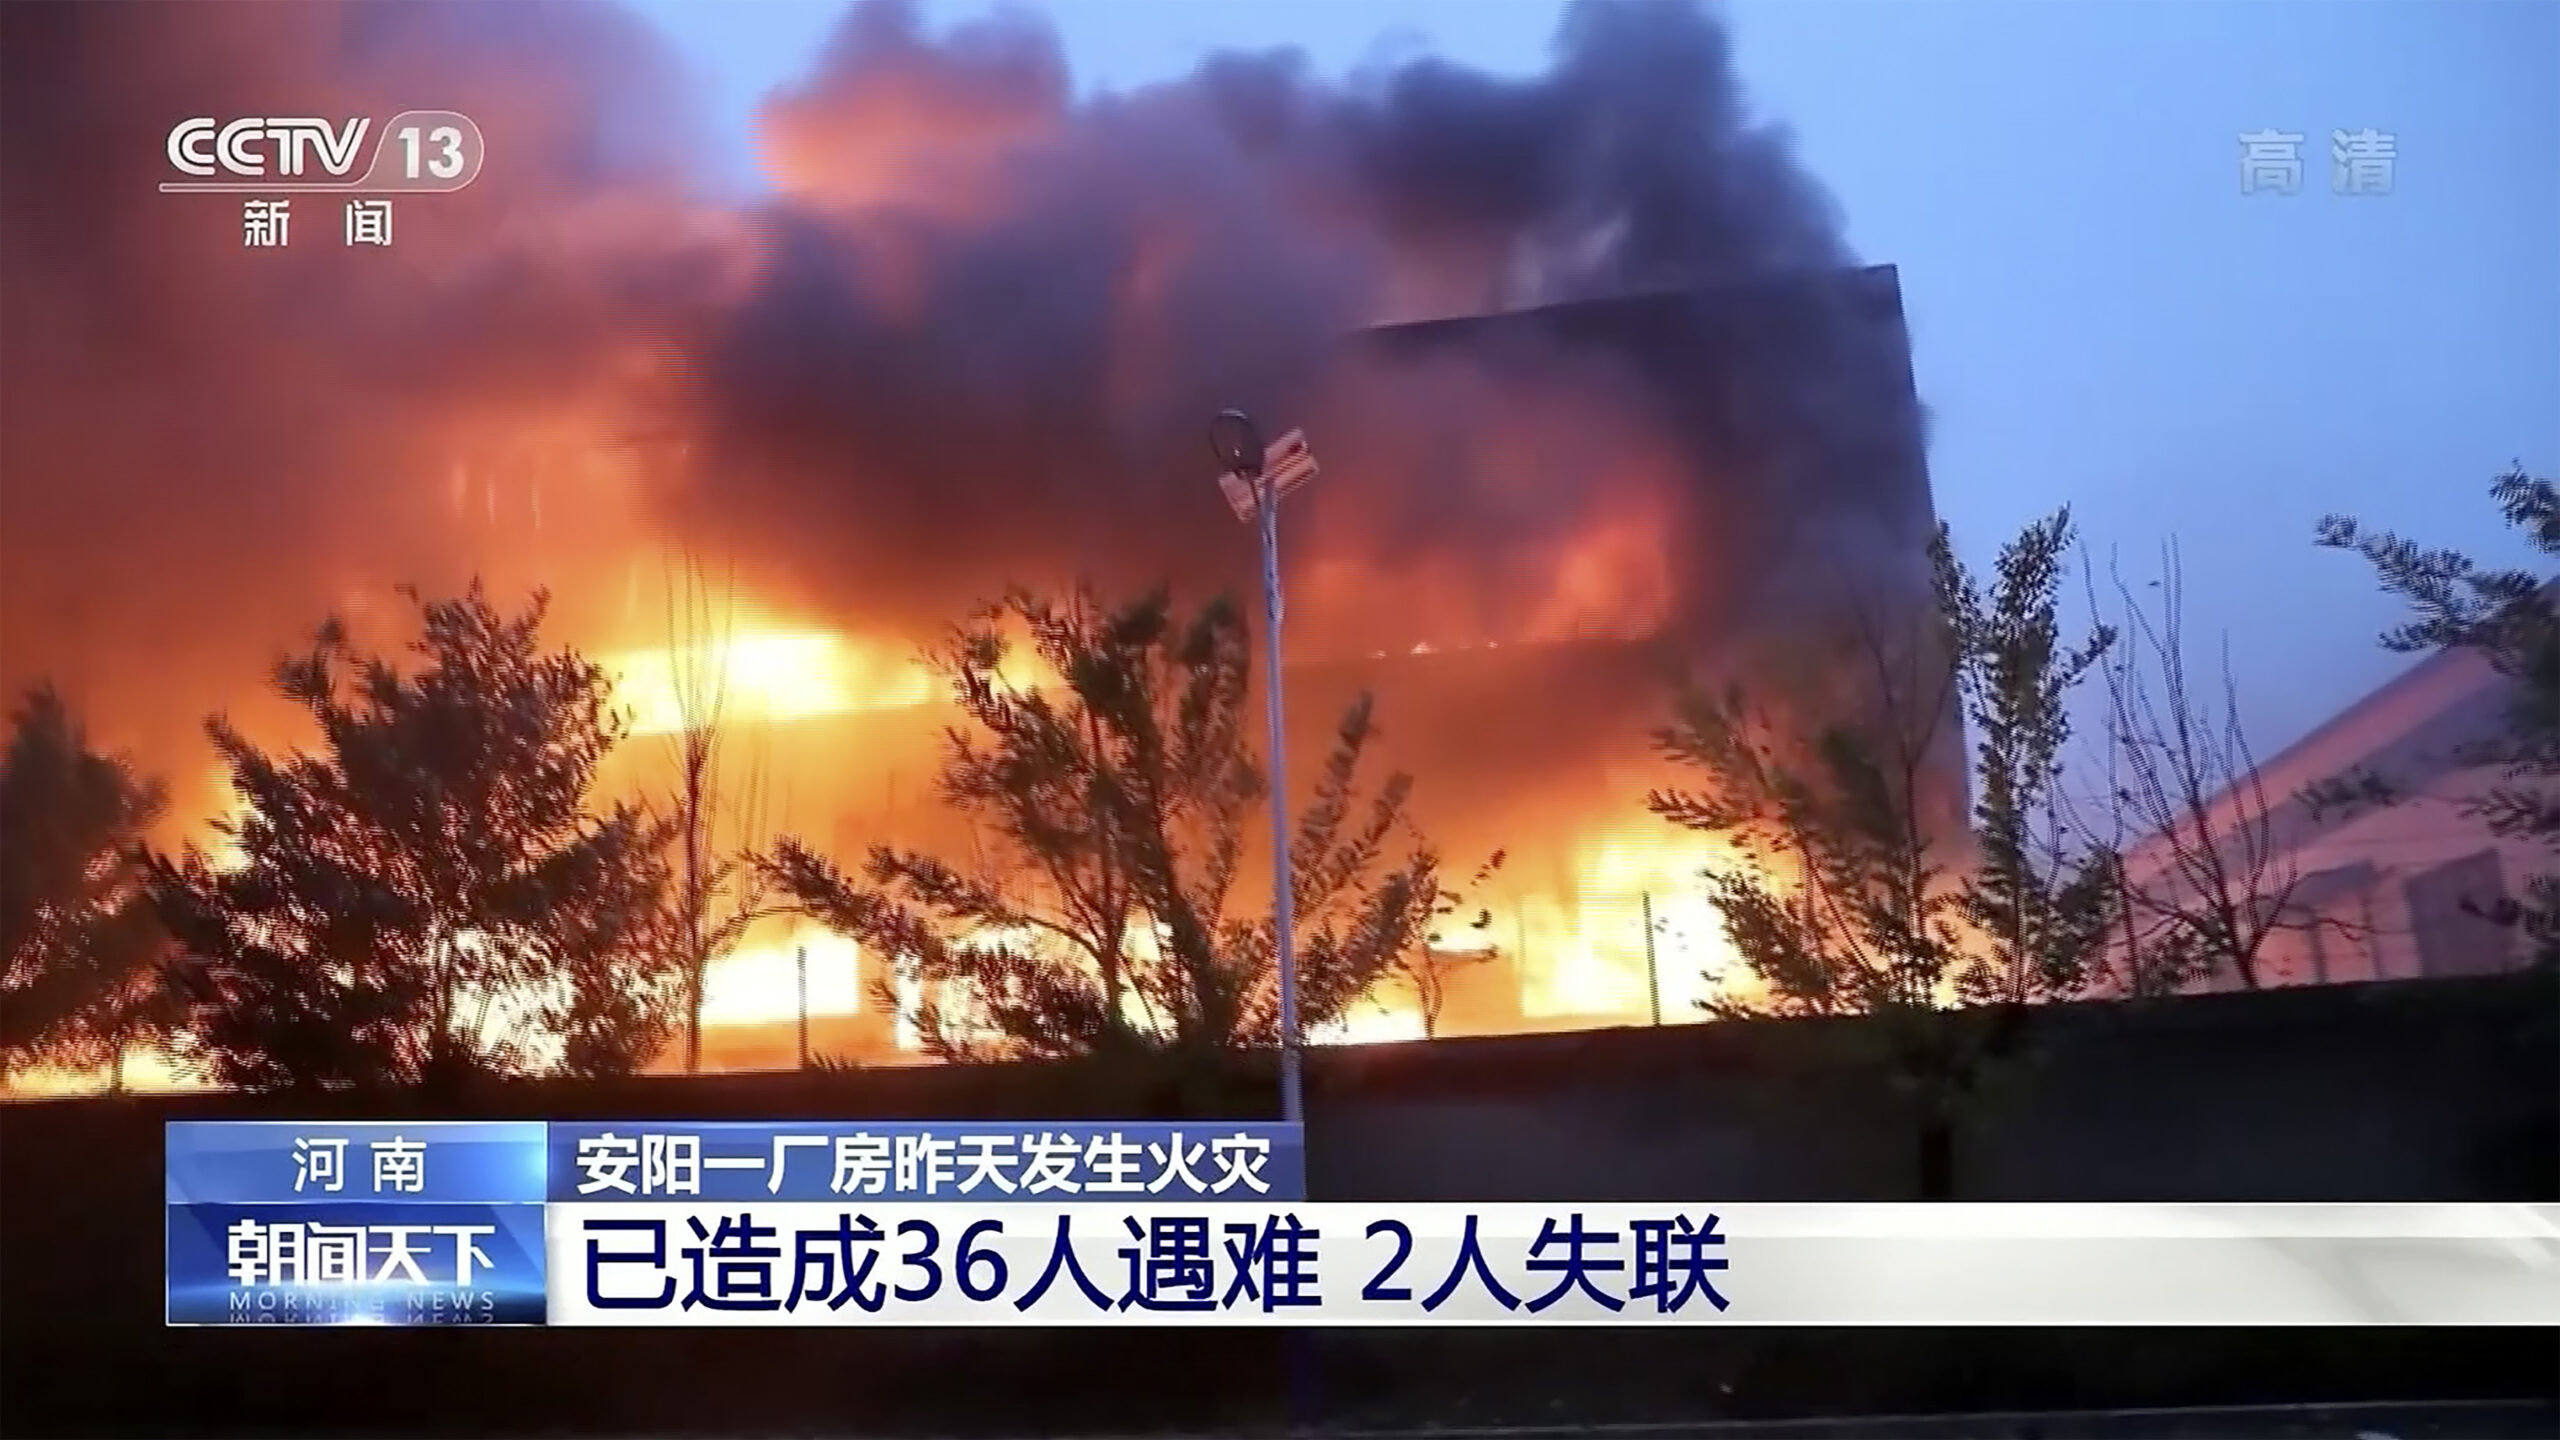 Auf diesem Standbild aus Videoaufnahmen des chinesischen Fernsehsenders CCTV brennt eine Fabrik in der zentralchinesischen Provinz Henan.